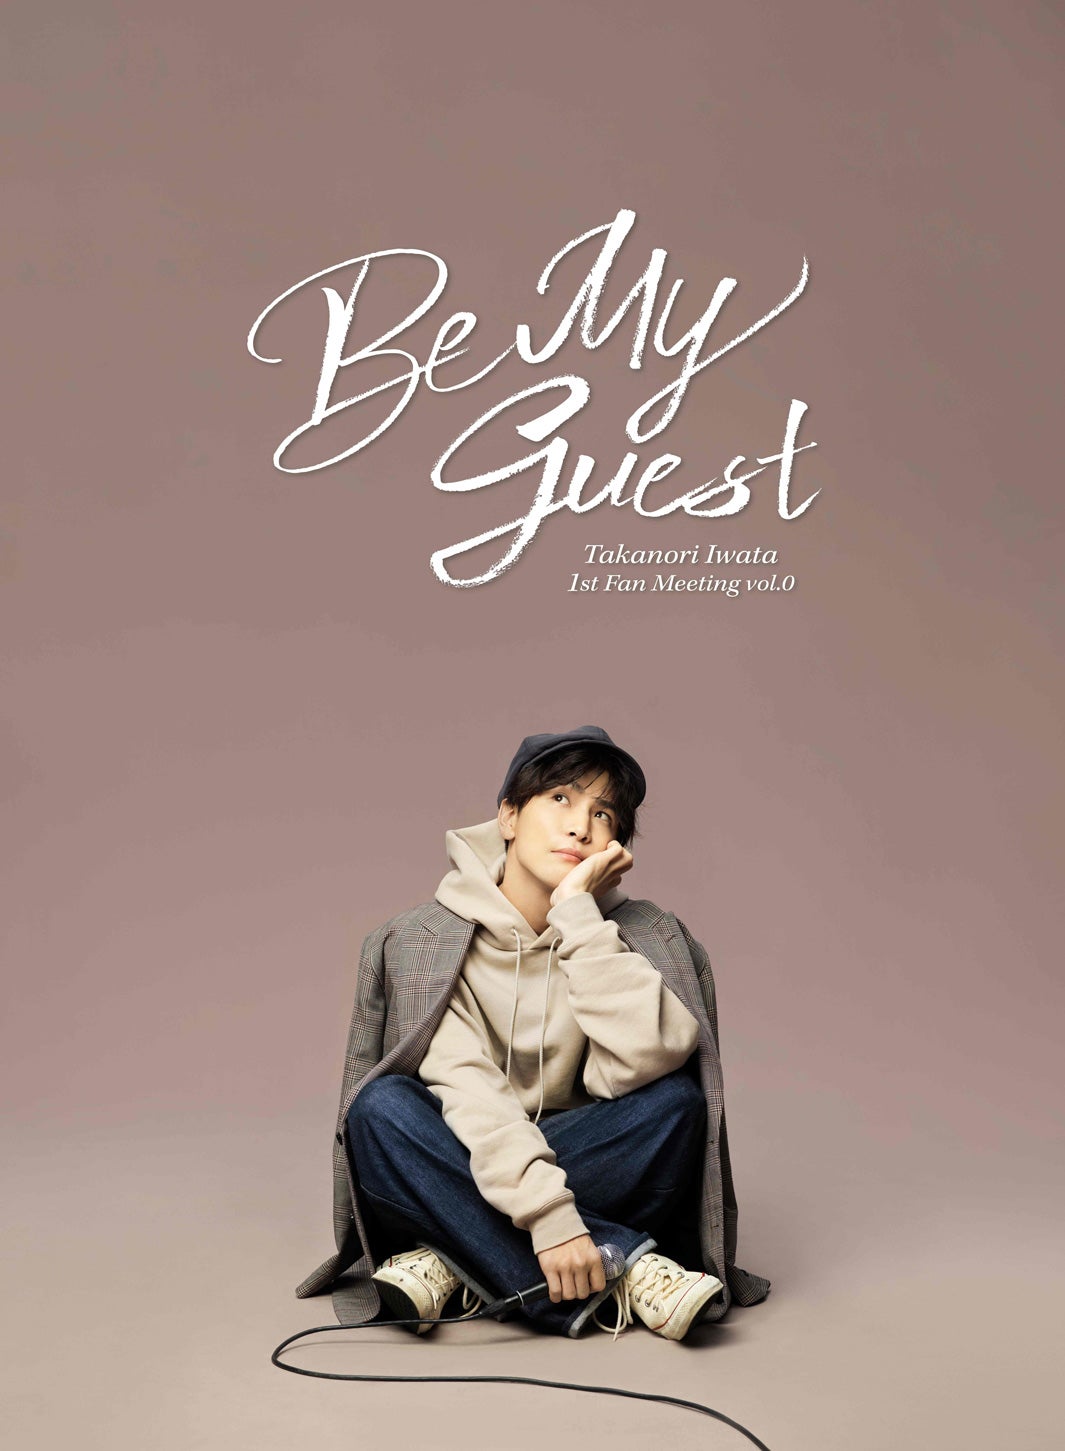 岩田剛典、ソロプロジェクト「Be My guest」始動 ソロアーティスト